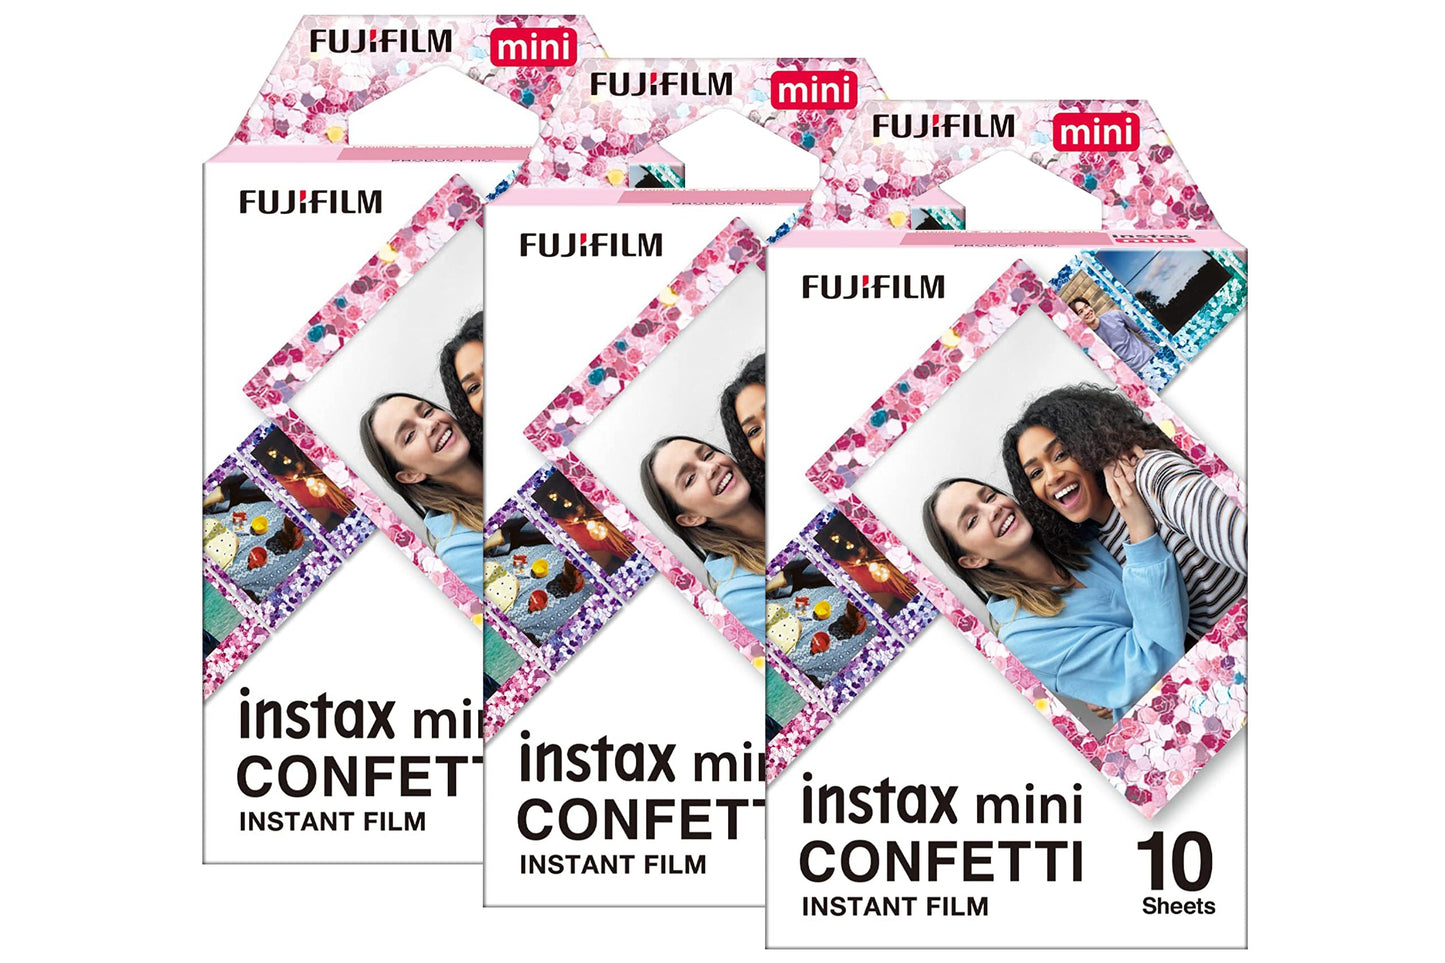 Fujifilm Instax Mini Confetti Photo Film - maplin.co.uk